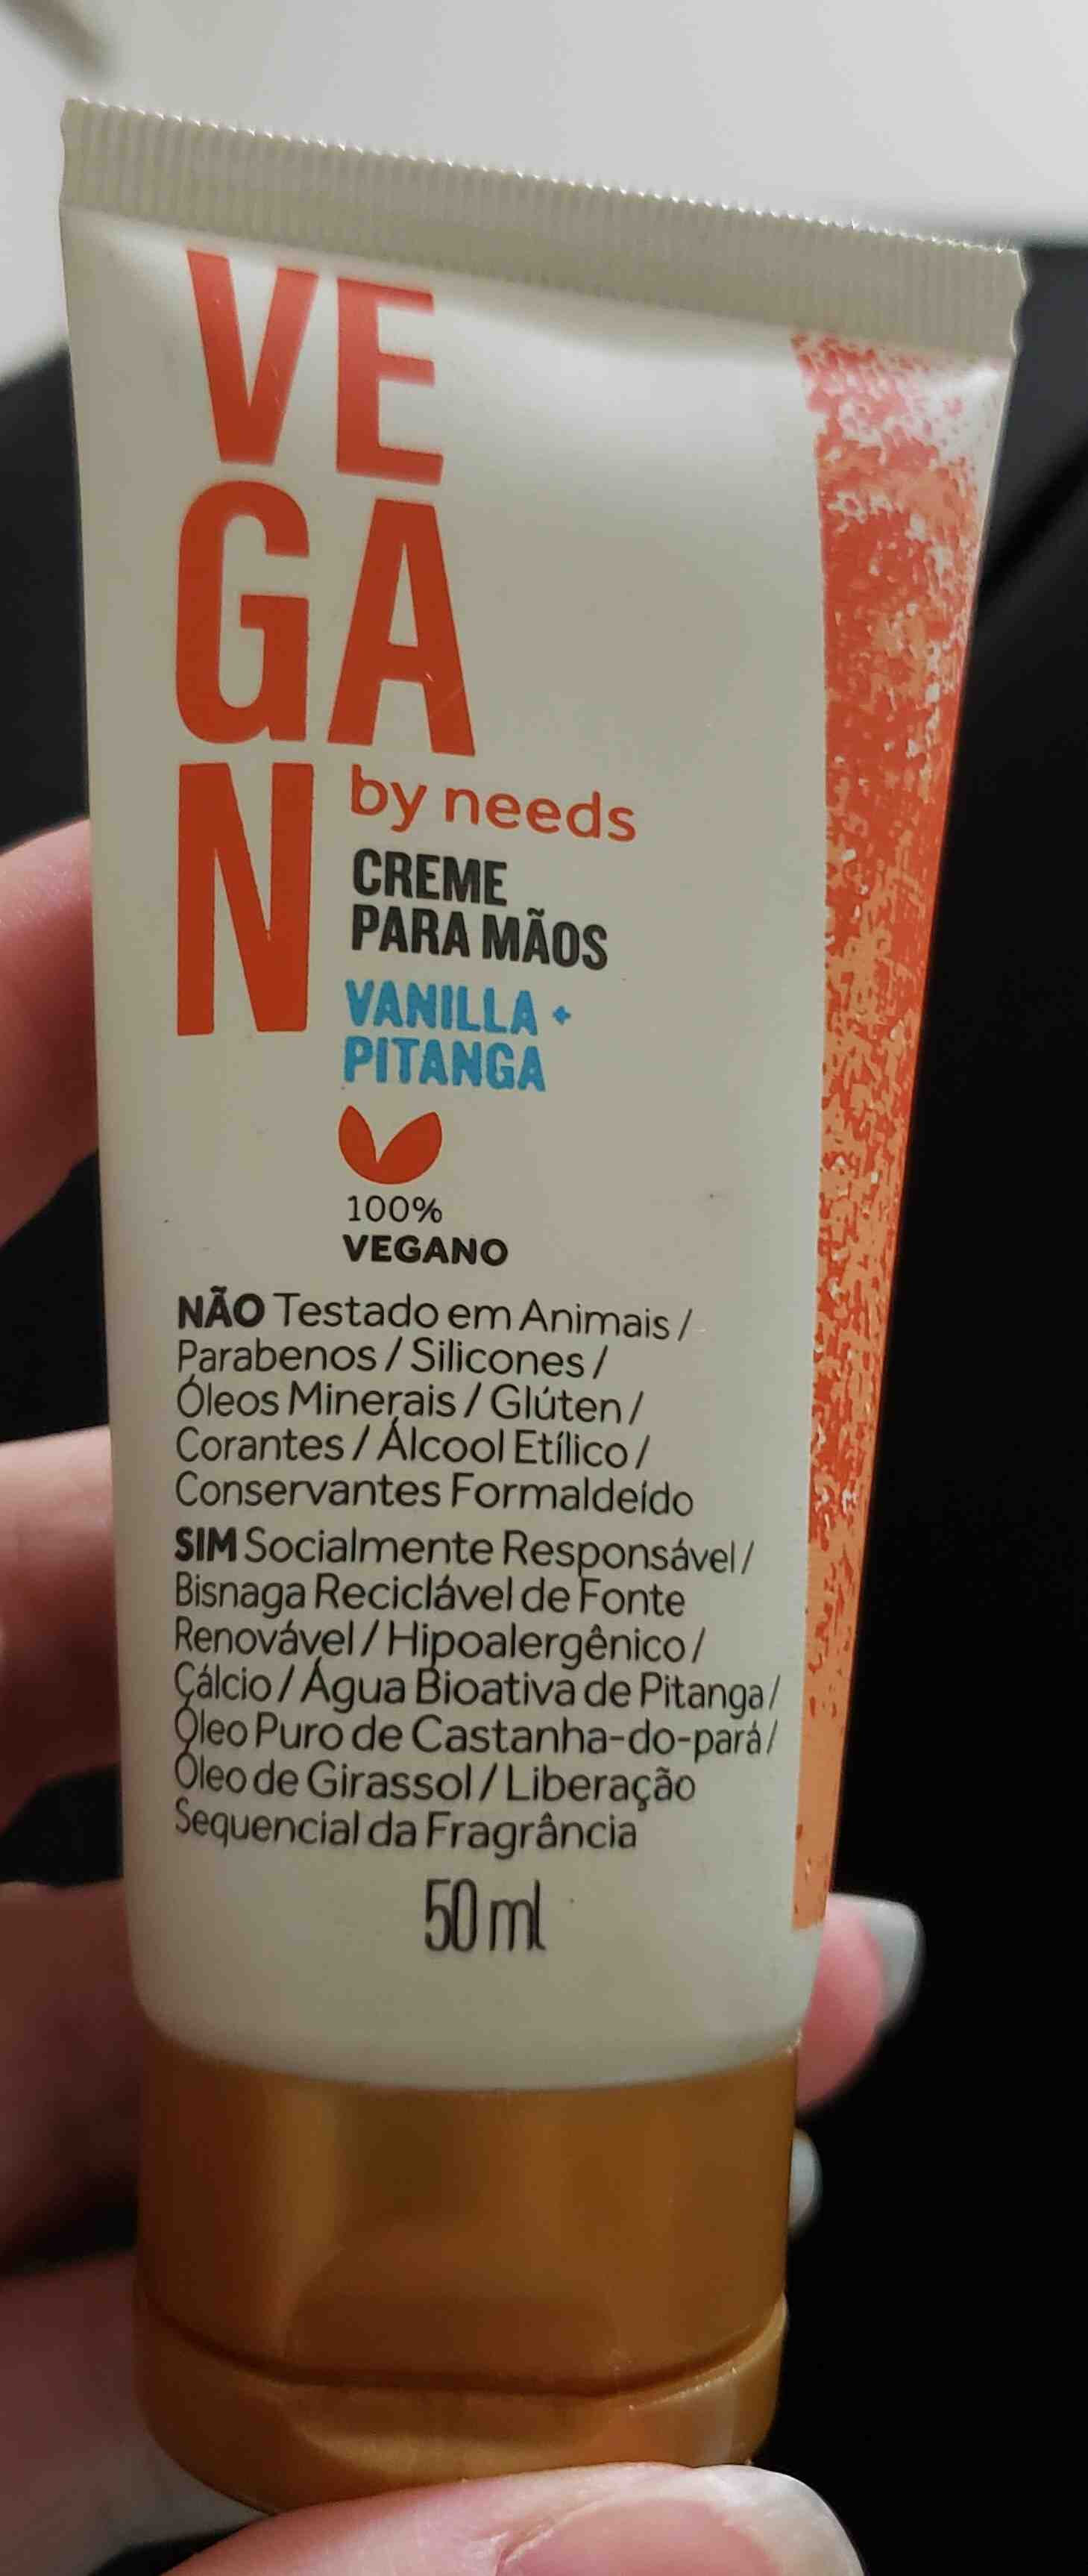 Creme para maos Vegan by needs - Product - en